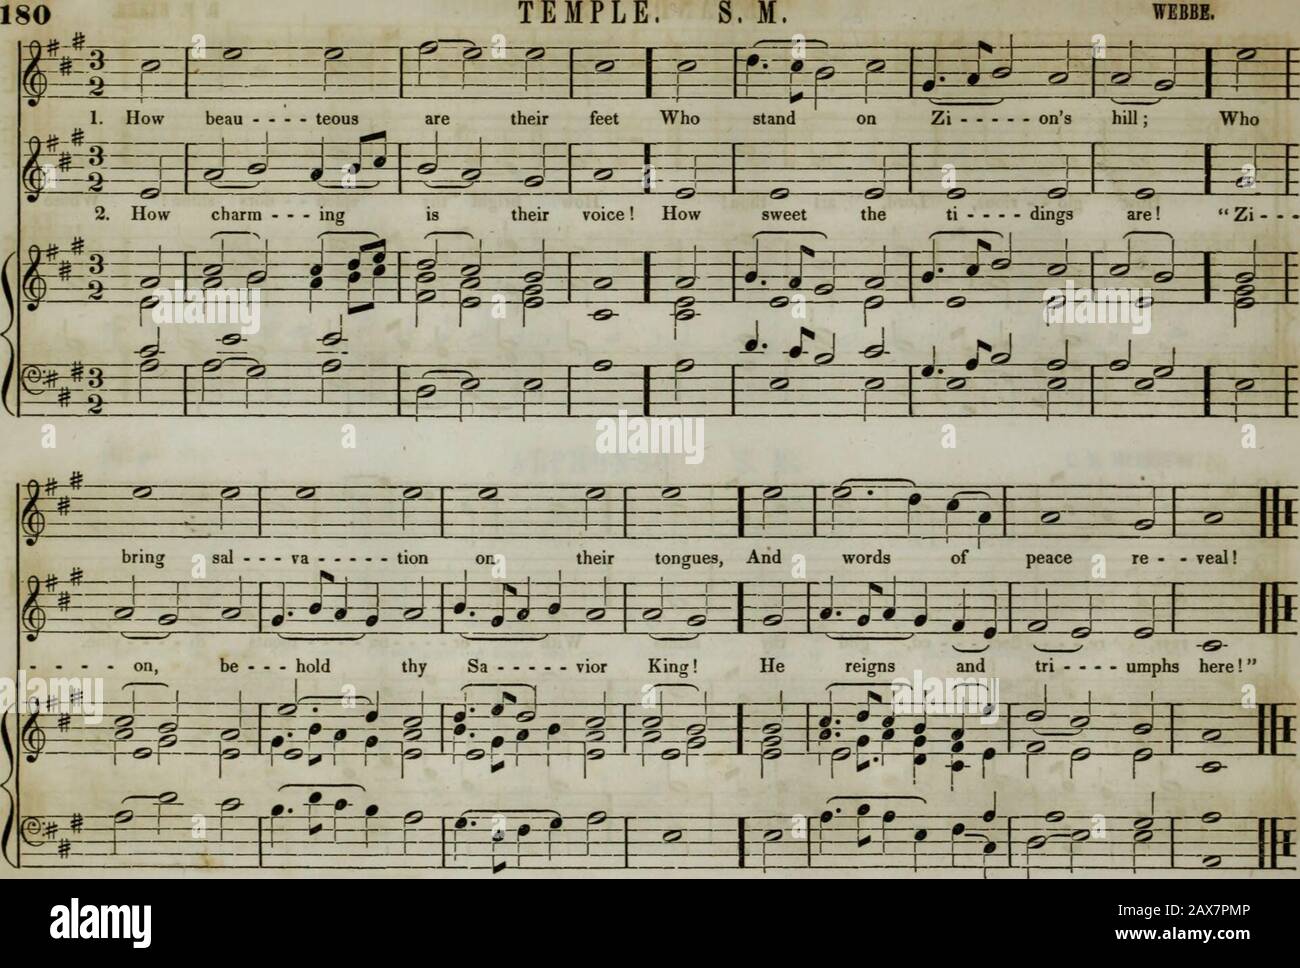 Die Sammlung der Kirchenmusik der Boston Musical Education Society besteht aus originalen Psalm- und Hymnenstücken, ausgewählten Stücken, Gesängen, &c.; einschließlich Kompositionen, die an den Dienst der evangelischen Episkopalkirchengemeinde angepasst sind. 44 f WARREN. S. M. z. B. weiß. 181 Fl-T # * =1-f 1 m i ? Mm m Aufrufe Und 1 ST in - &gt; -i-i-[J JJ d-+ -Hi -#- dev. -tx J r - •--fi i j.. J 1 - tl J   & I d JN r j lr? R r rr f --+"-d j. J . n? - O-0 1 0 * 4-f-1 -J-Mf * 60 • 181 RUTLAND. S. M. Von CORELLI Aus arrangiert. ? 1 * *^ &gt; * ••?•V % - #-4-^ Wel- kommen, süß1 J Ruhetag, Der den Herrn A - - - Rise; Wei - sah Stockfoto